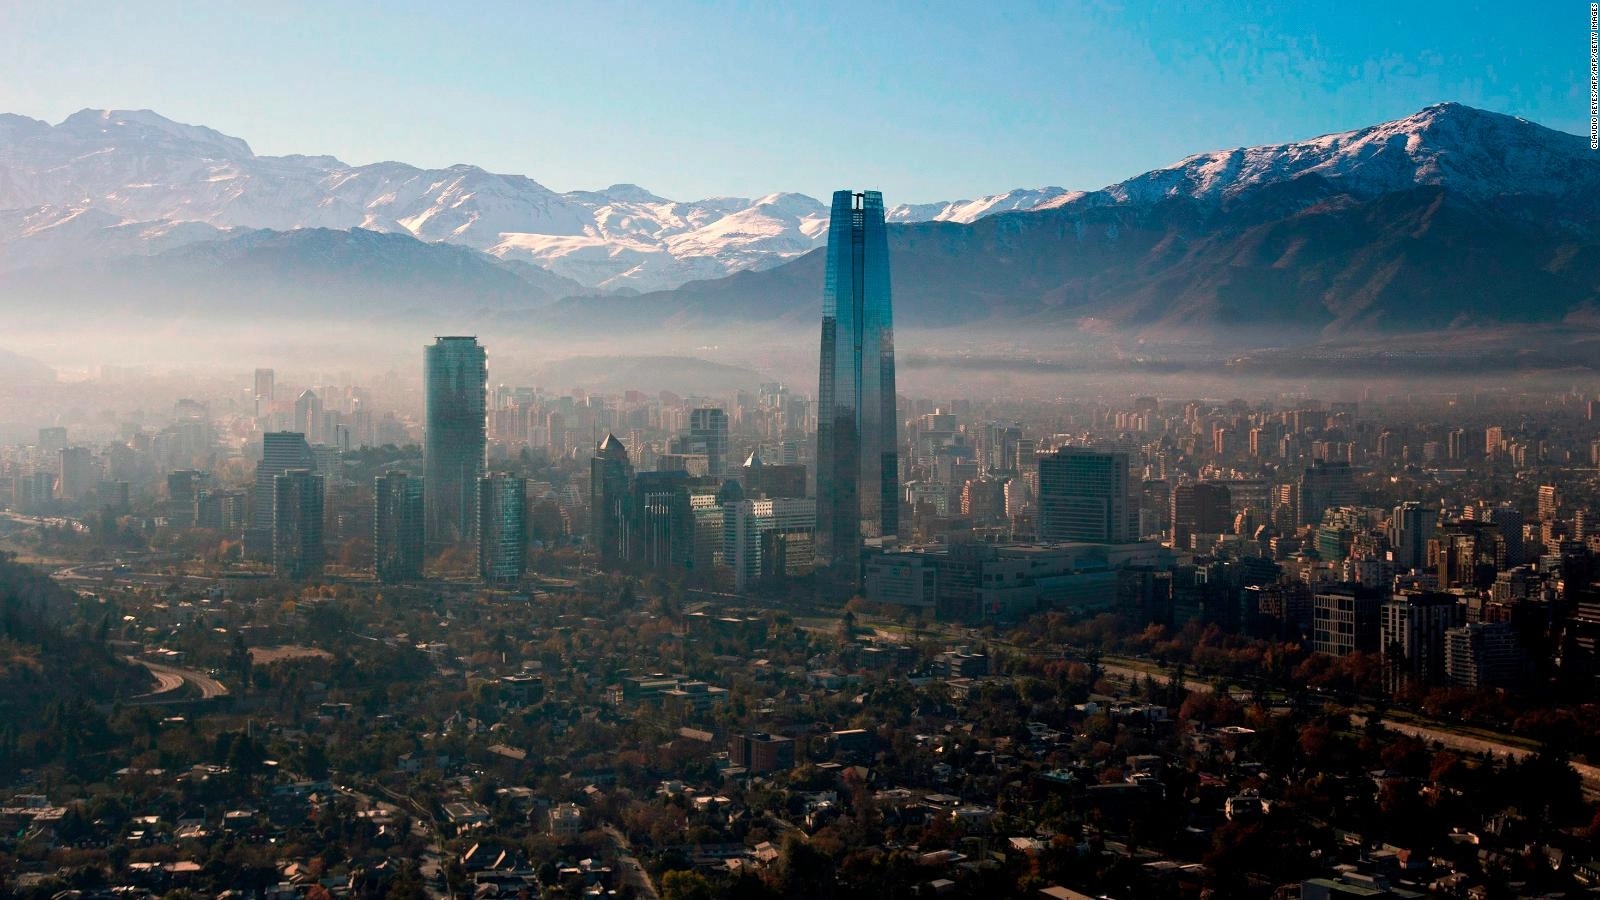 Chile's capital city, Santiago.